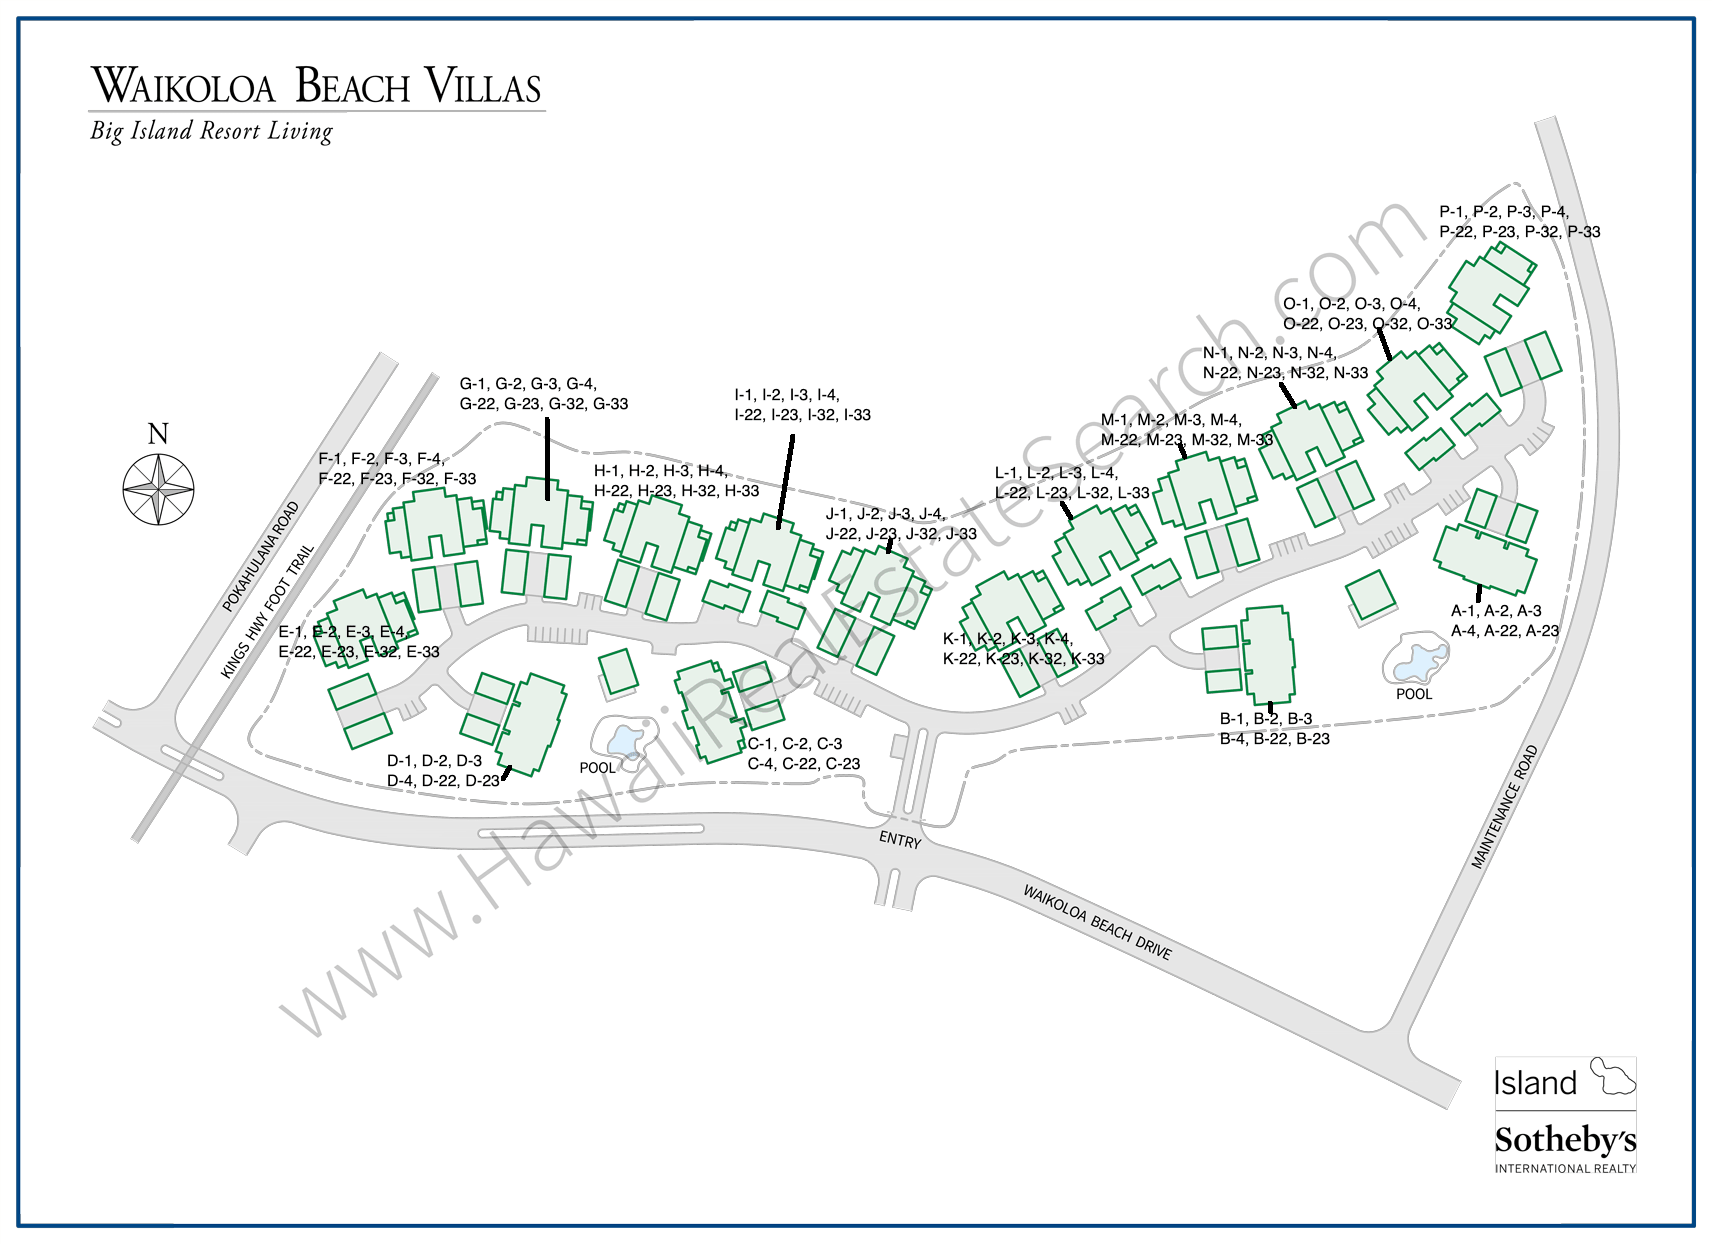 Updated Map of Waikoloa Beach Villas